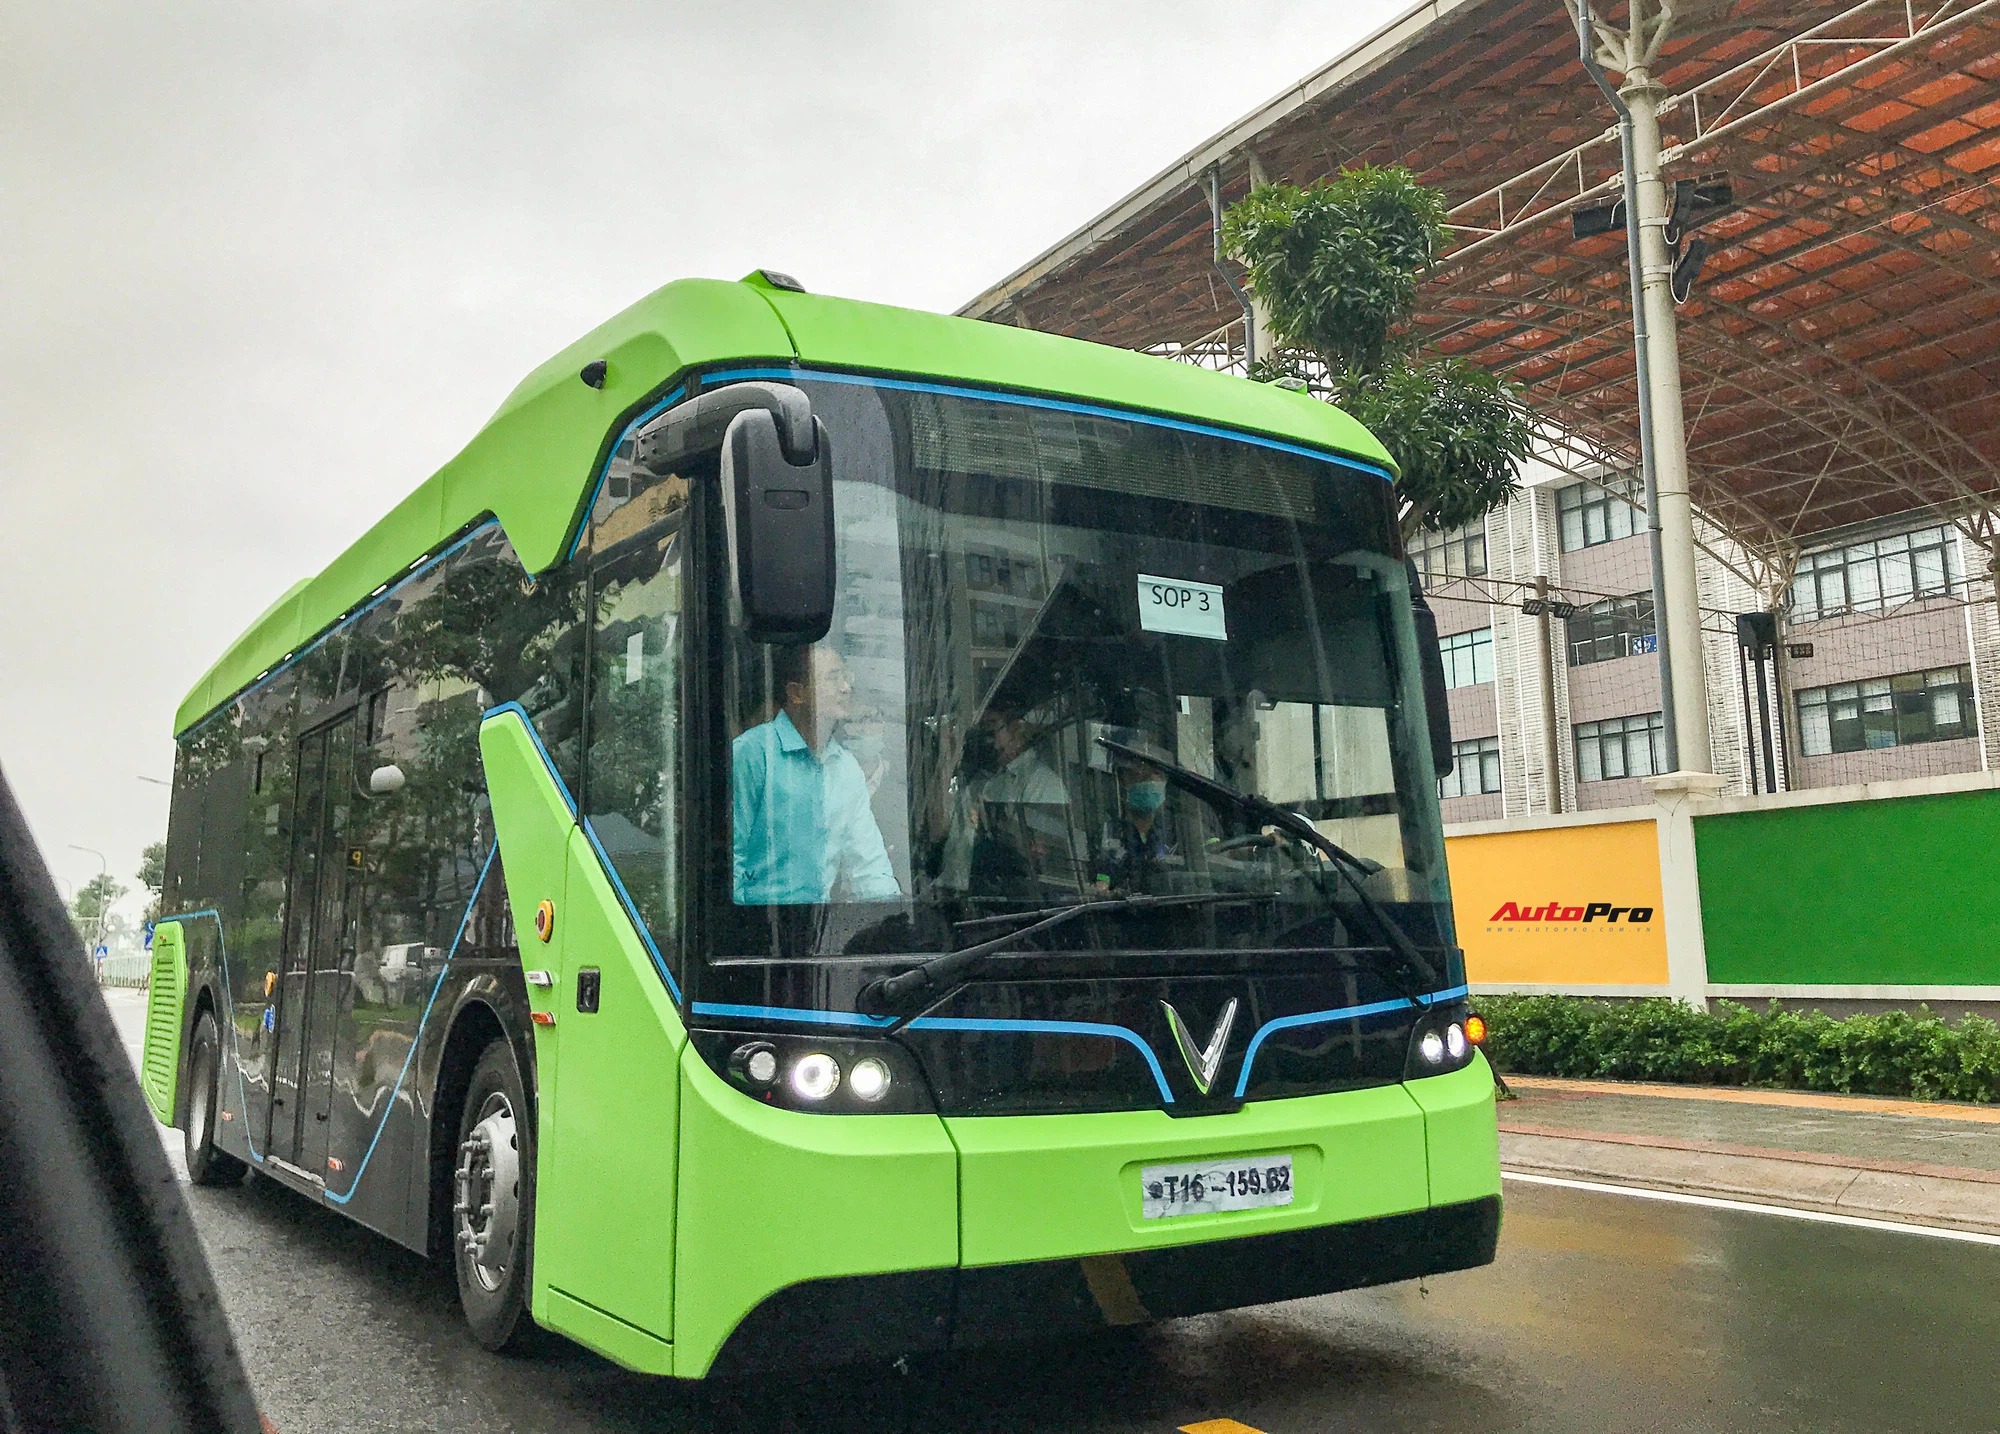 VinBus đầu tiên lăn bánh tại Hà Nội: Hãy trải nghiệm sự mới mẻ của VinBus - dịch vụ xe buýt chất lượng cao, có thiết kế sang trọng và tiện nghi, và an toàn cho môi trường. Không khí trong lành và bãi đỗ xe tiện nghi, đảm bảo cho một chuyến đi thú vị và đáng nhớ. Hãy xem hình ảnh để khám phá thêm về sự độc đáo của dịch vụ này.